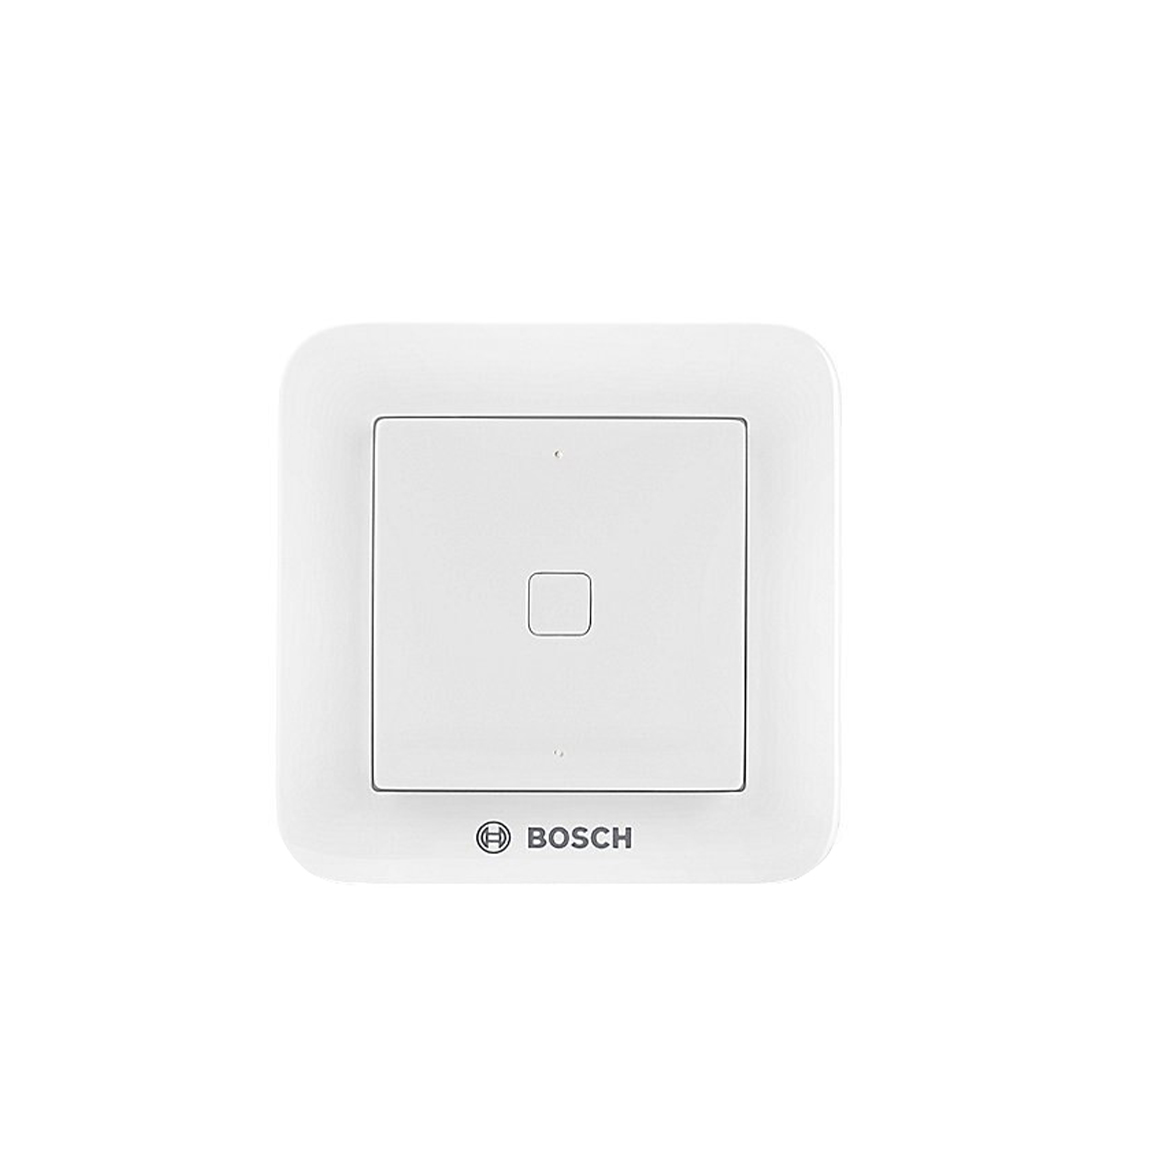 Bosch Universalschalter - Weiß